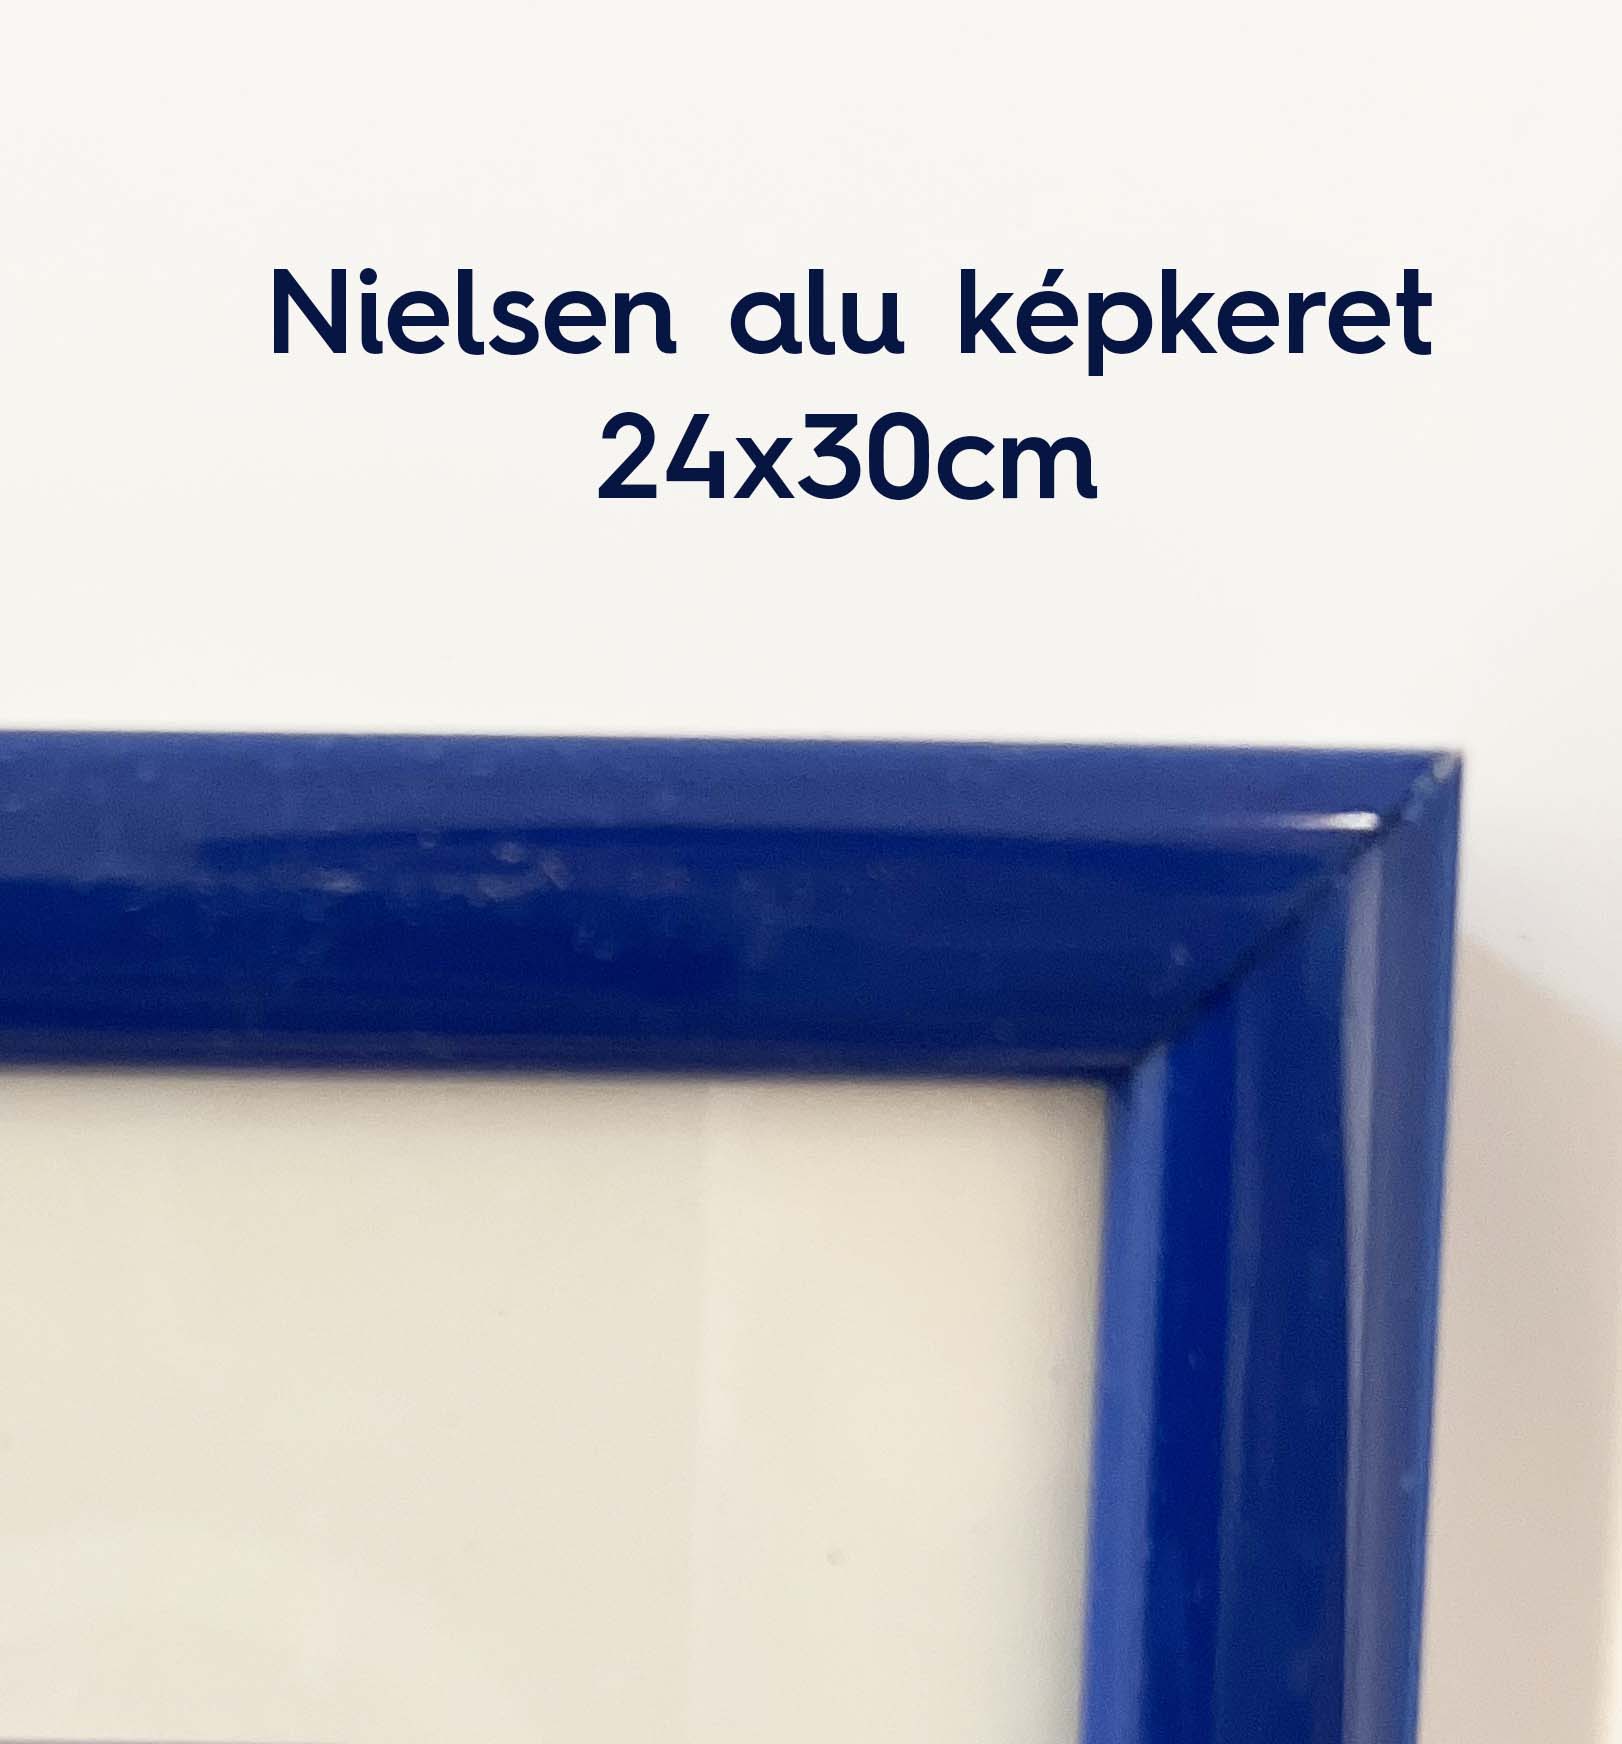 Nielsen KÉK képkeret - 24x30cm 